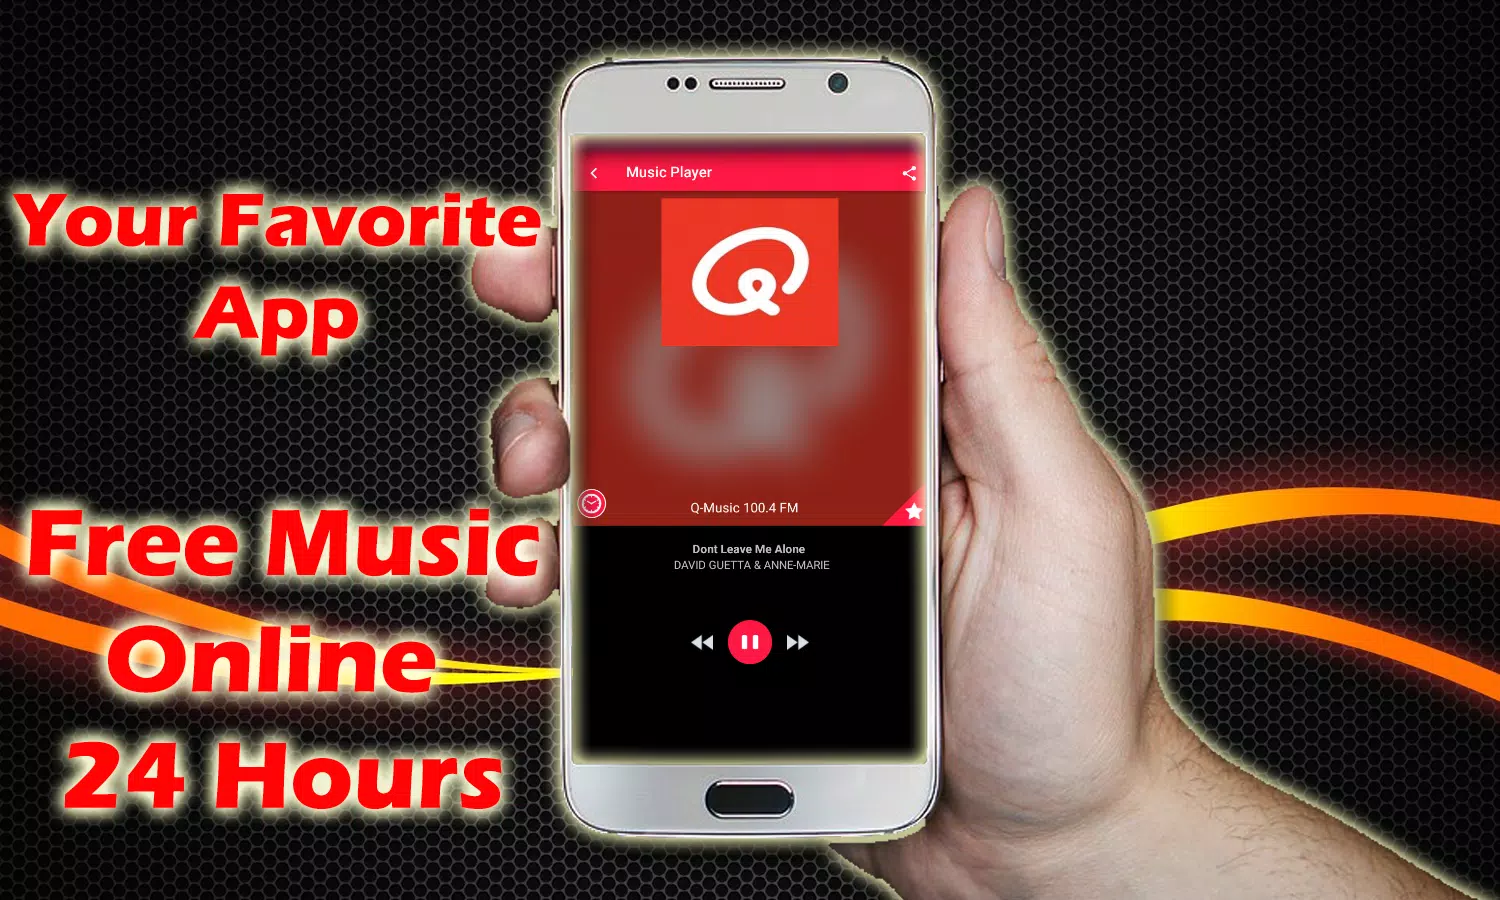 Q Music Live 100.4 FM Radio Q Music NL Qmusic App APK for Android Download